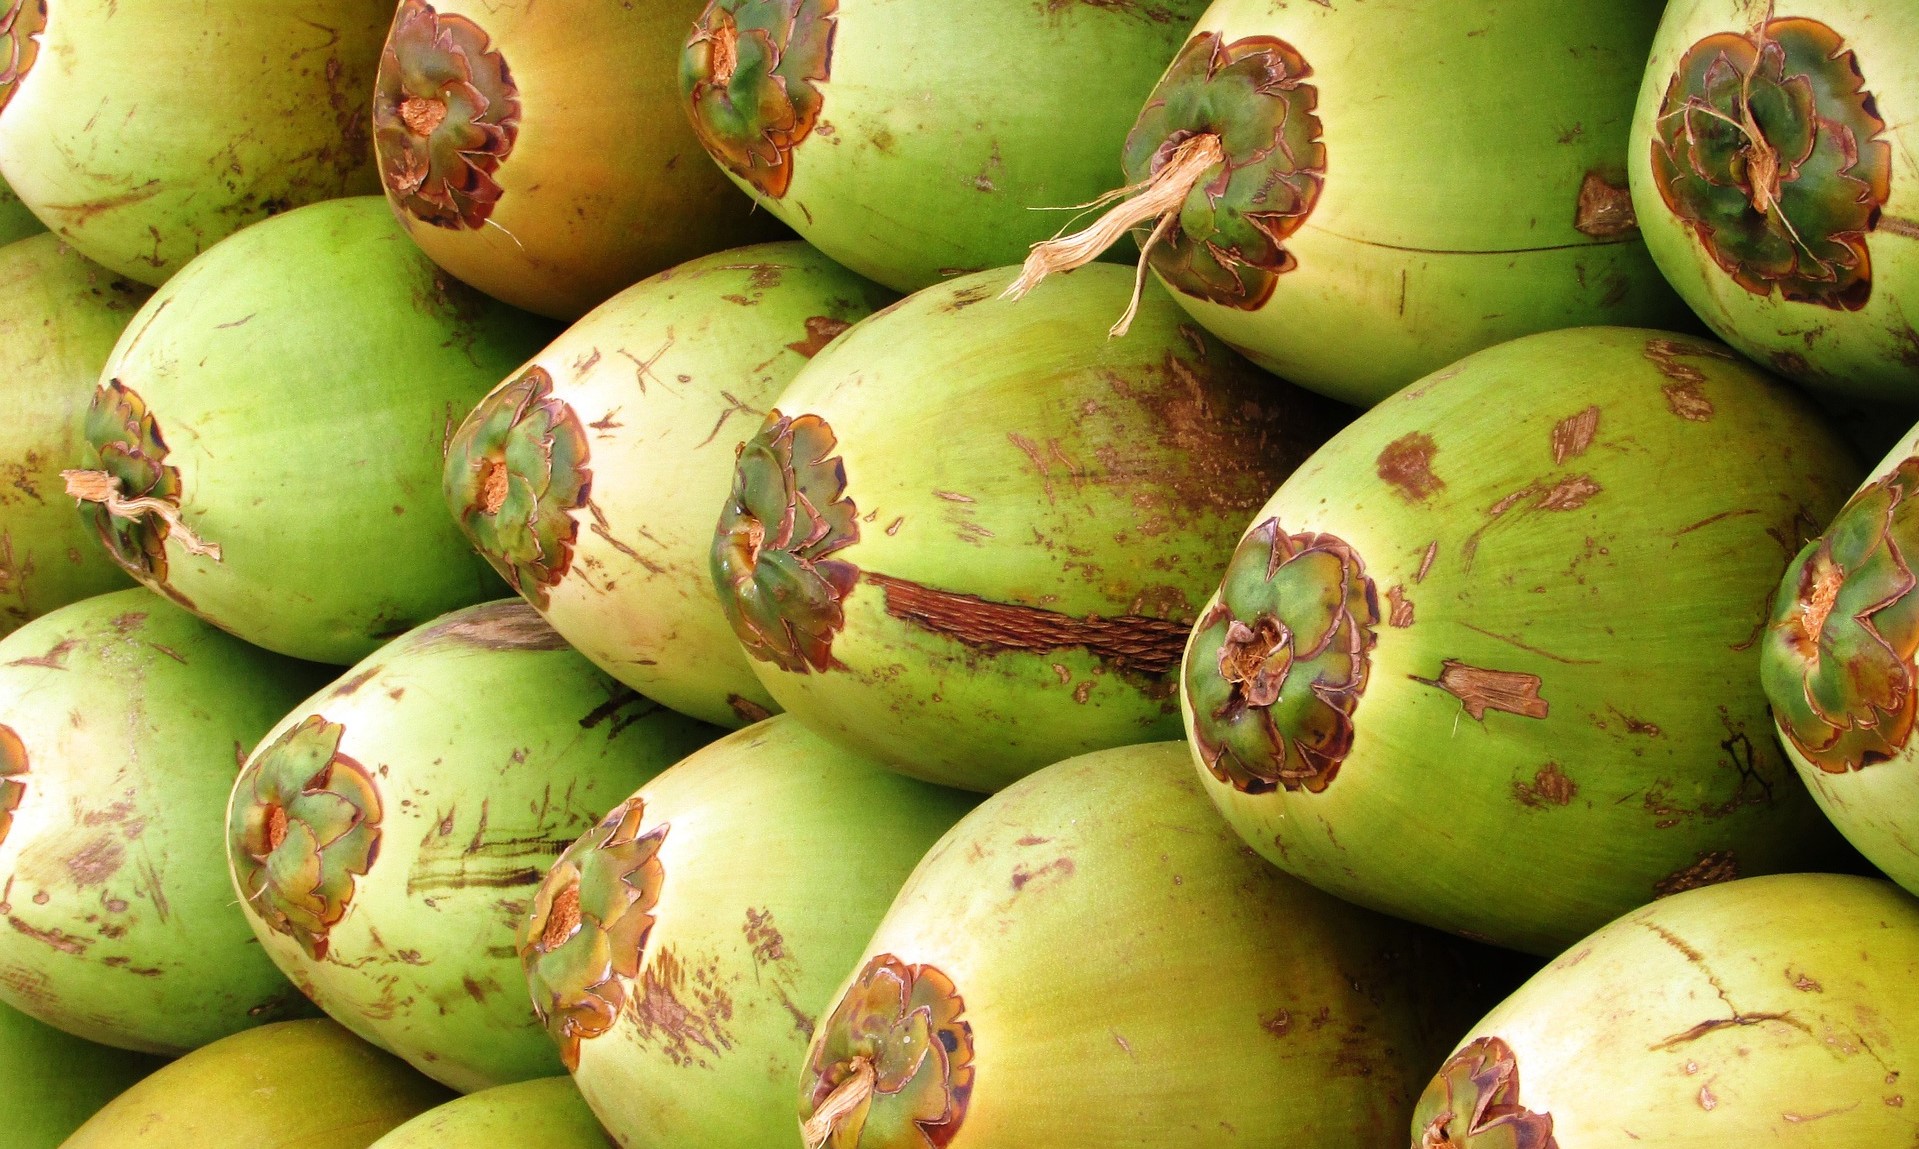 kokosnøtter